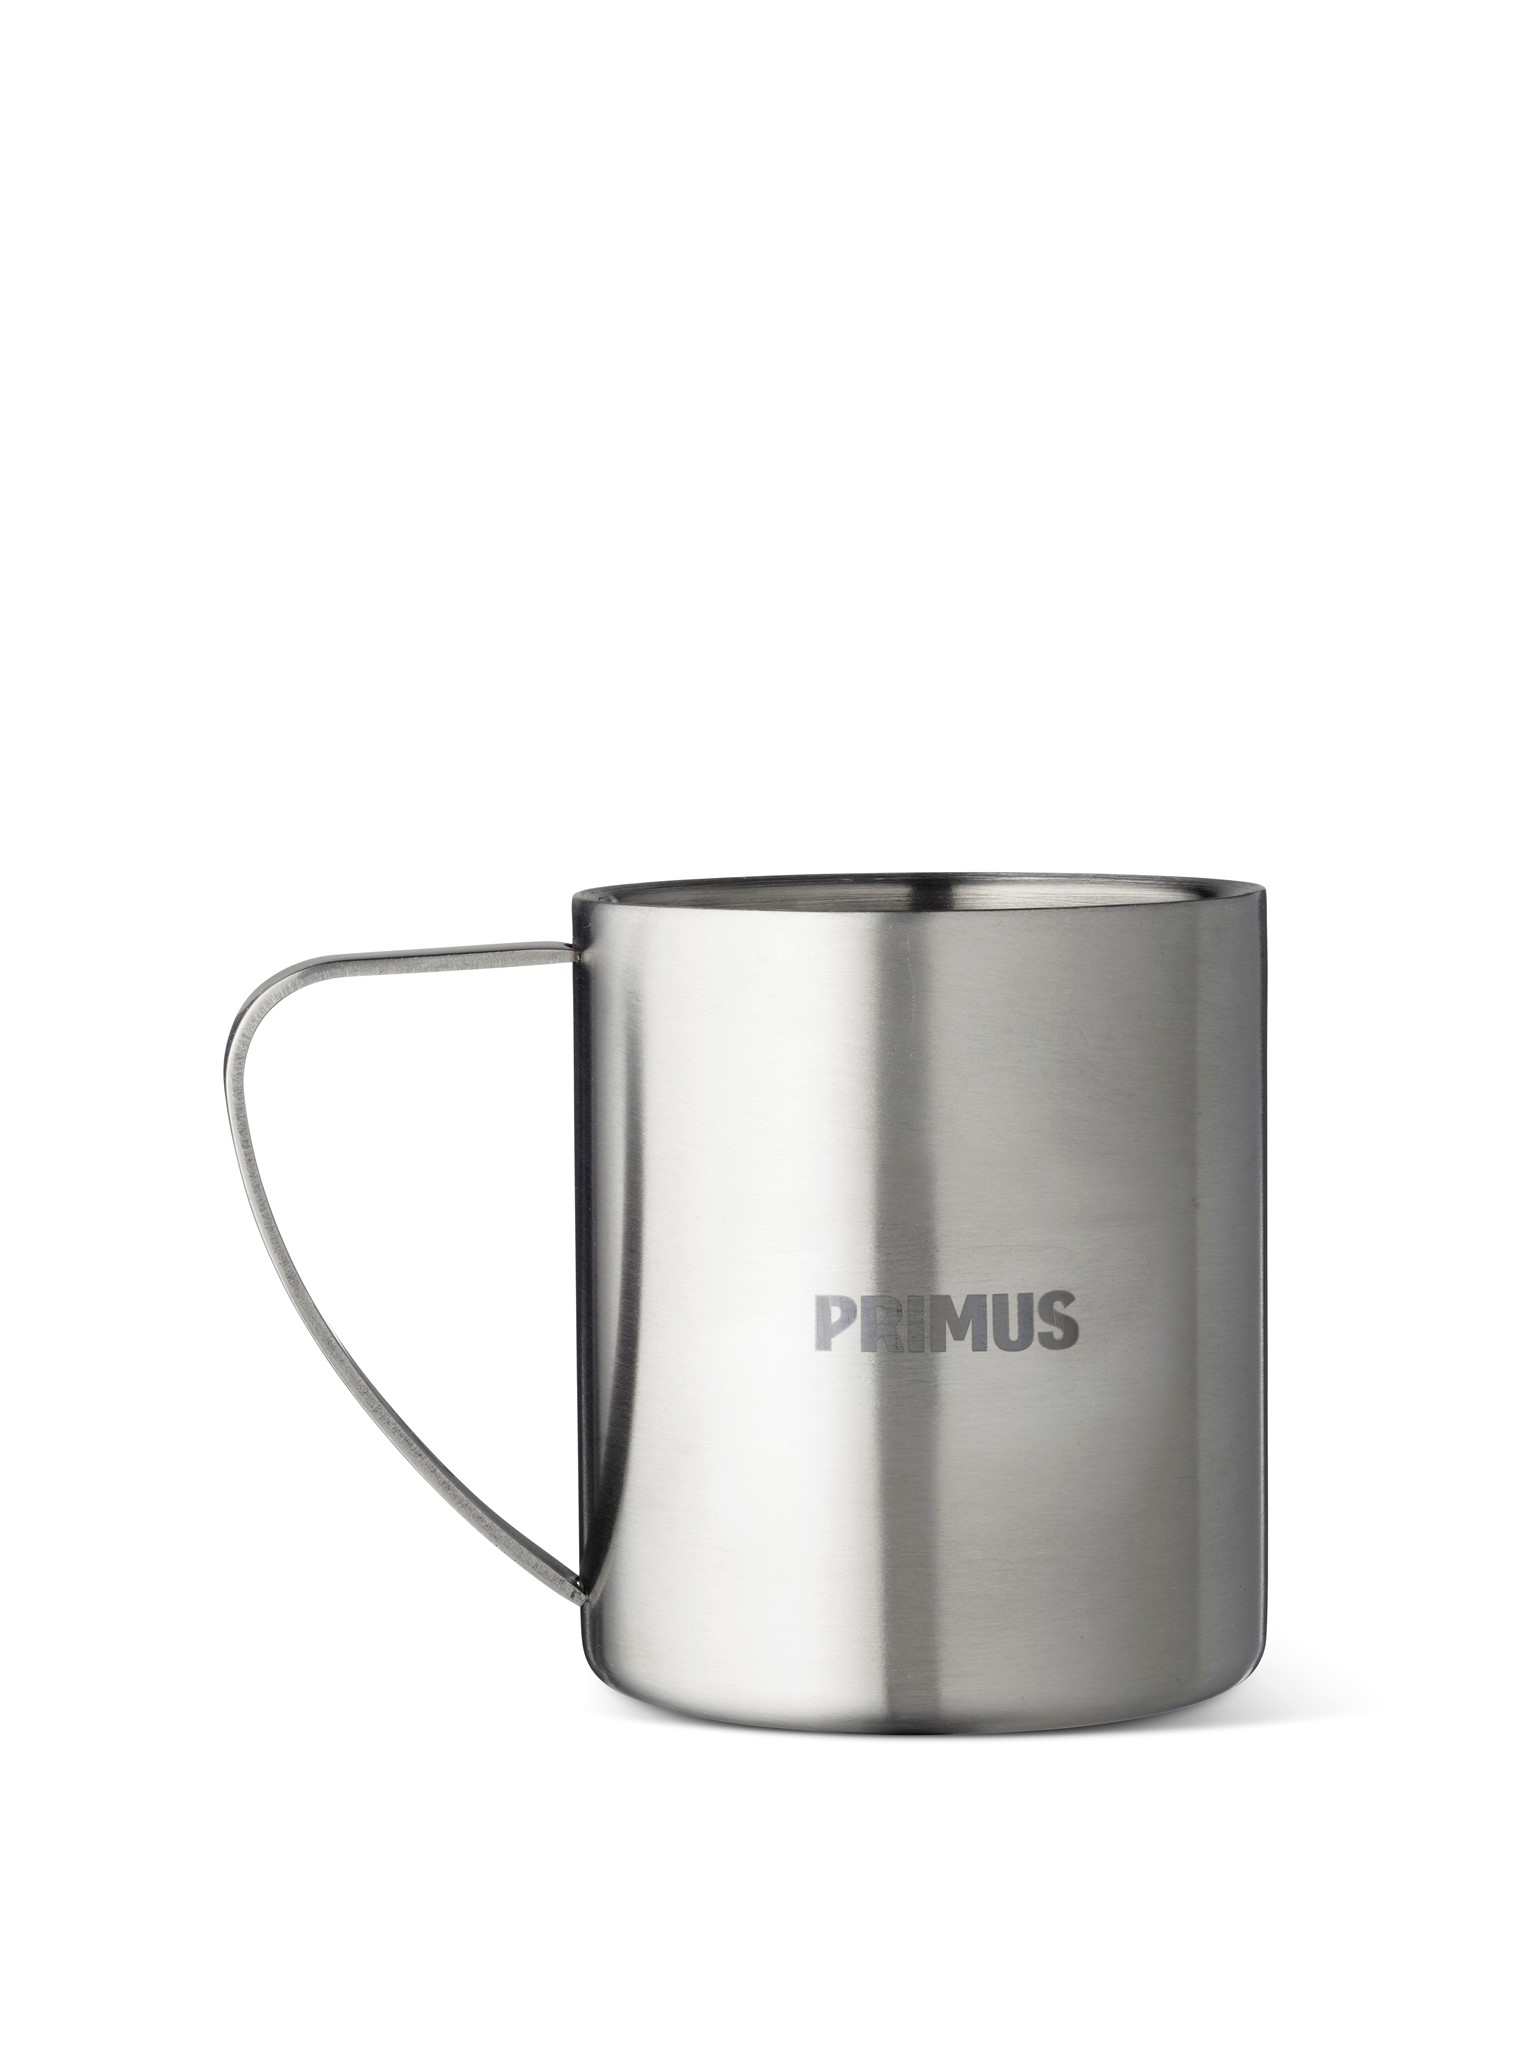 Image de Primus - Mug 4-Saisons 200 ml